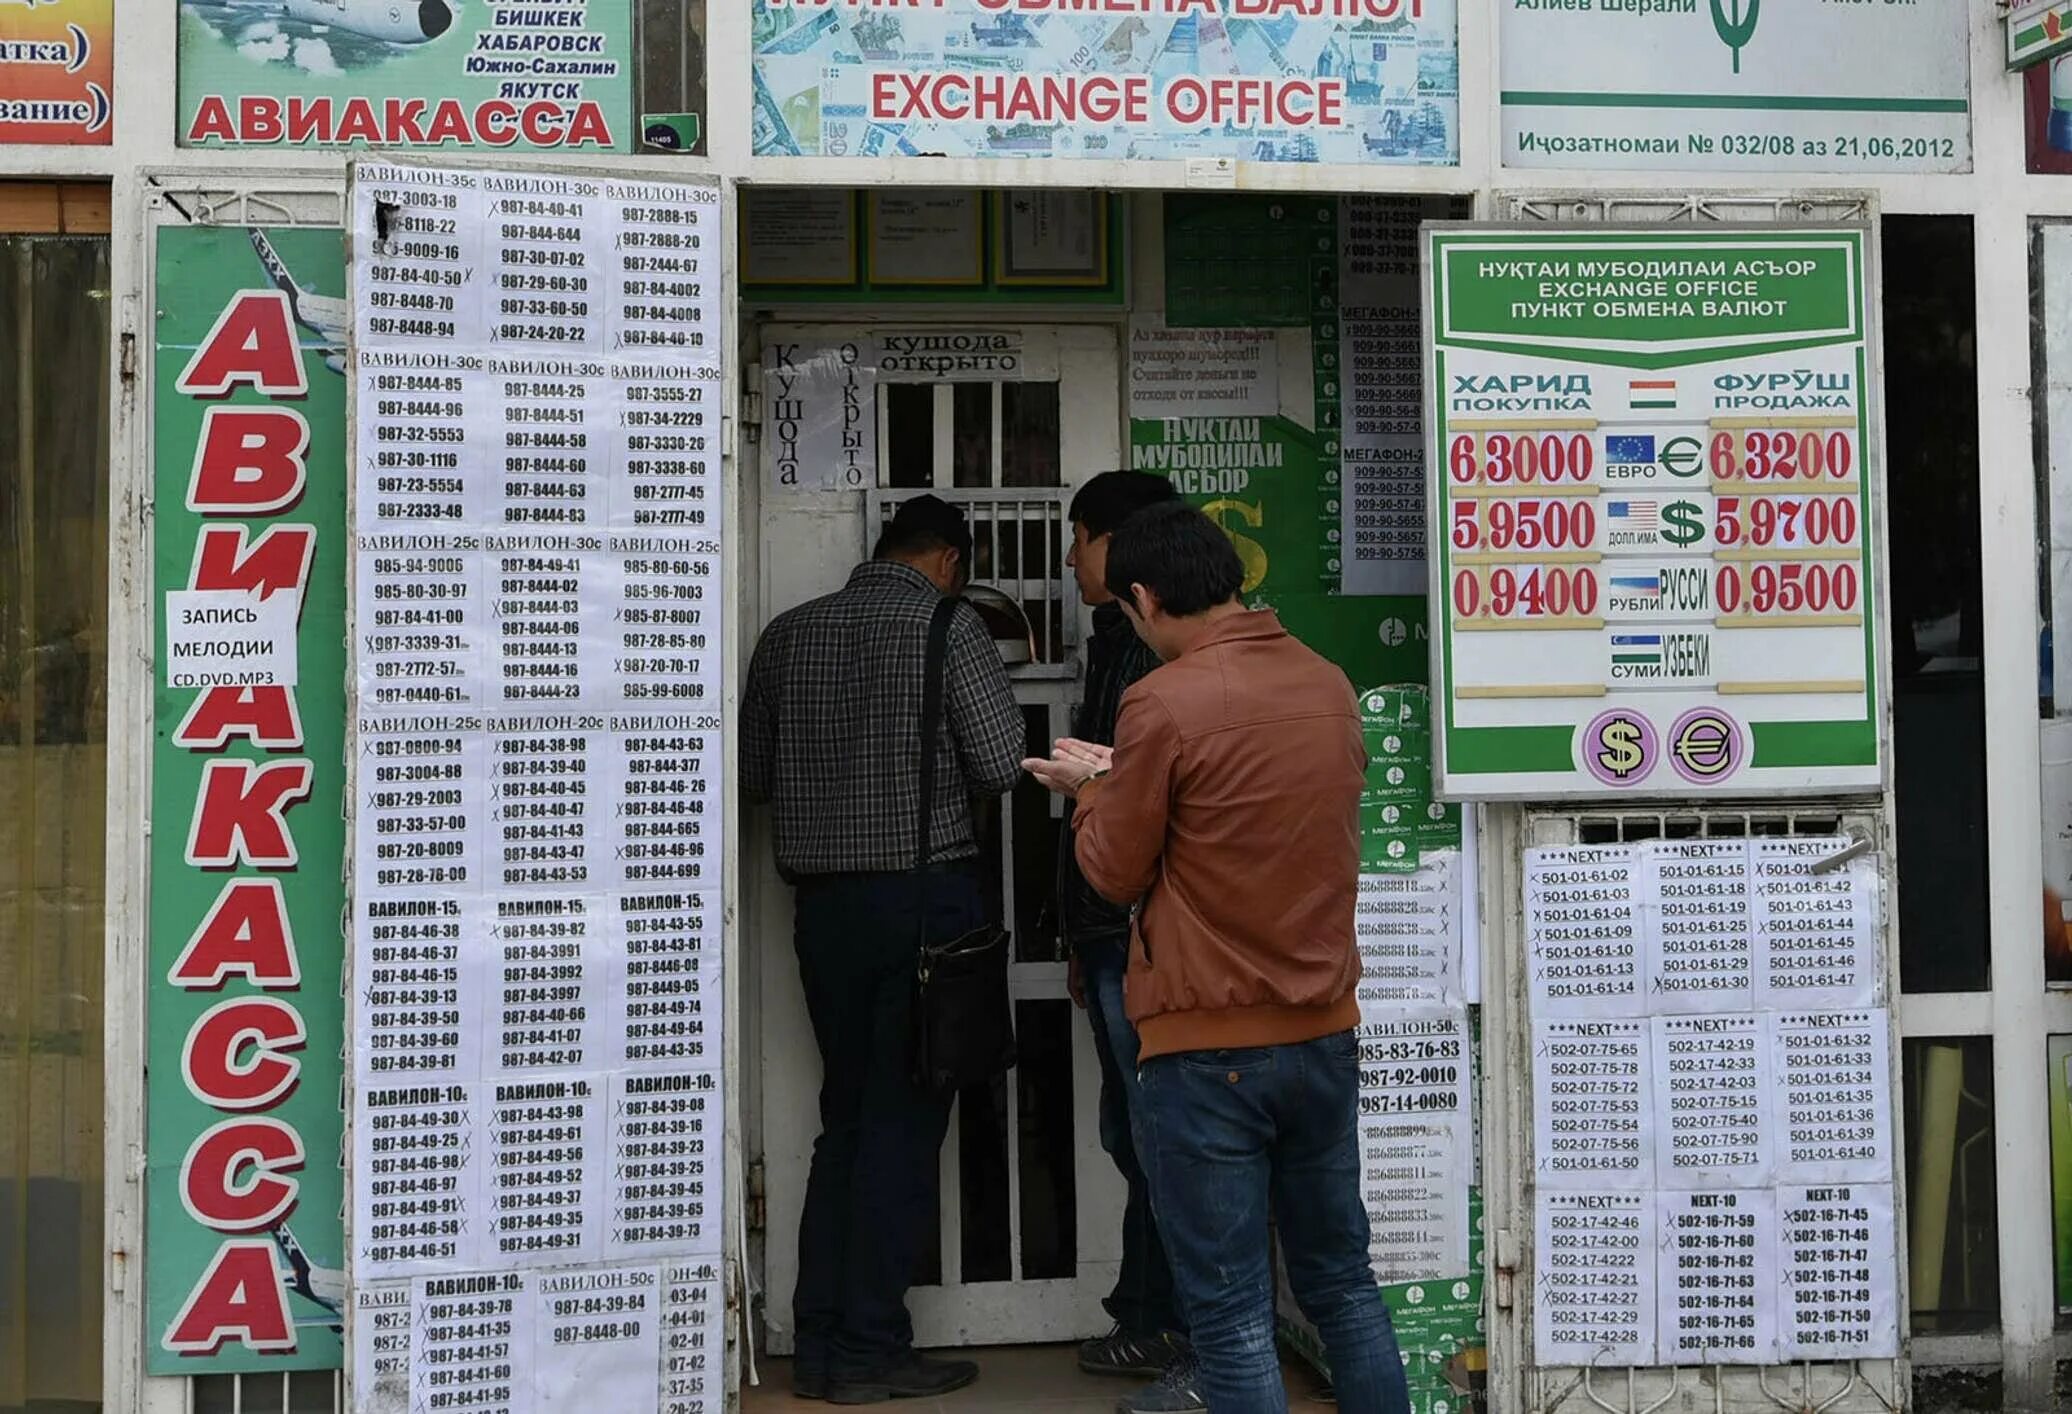 1000 таджик. Обменные пункты в Таджикистане. Курс рубля к Сомони. Обмен валюты. Курсы валют в Таджикистане.